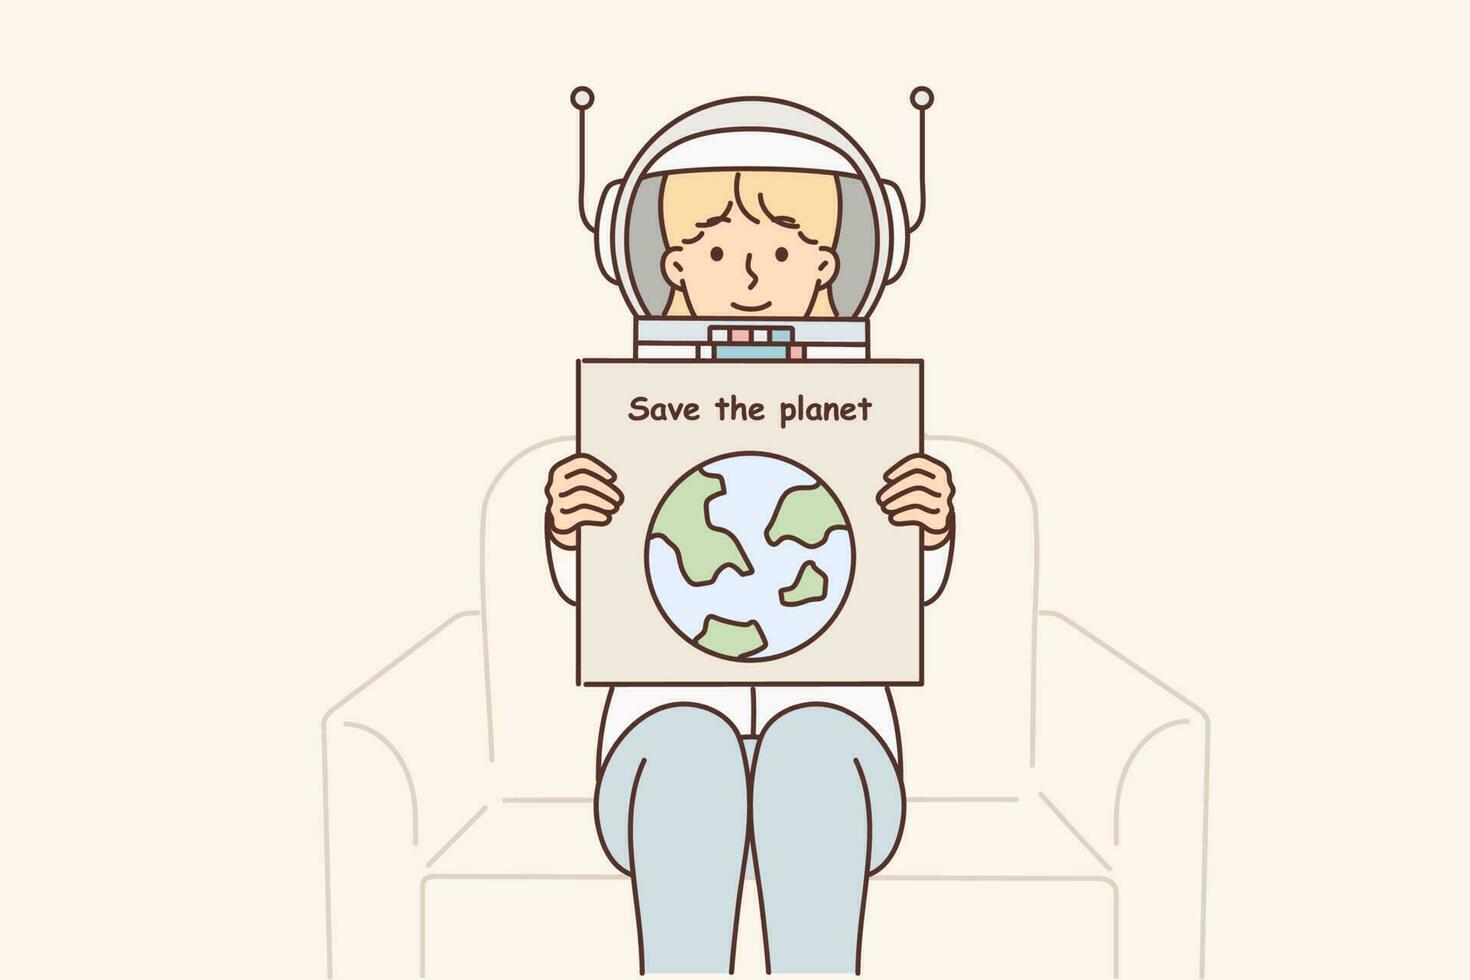 mujer en astronauta espacio traje sostiene póster vocación para ahorro planeta y tomando cuidado ambiente a combate co2 emisiones niña eco activista peleas en contra perjudicial emisiones contaminador planeta vector